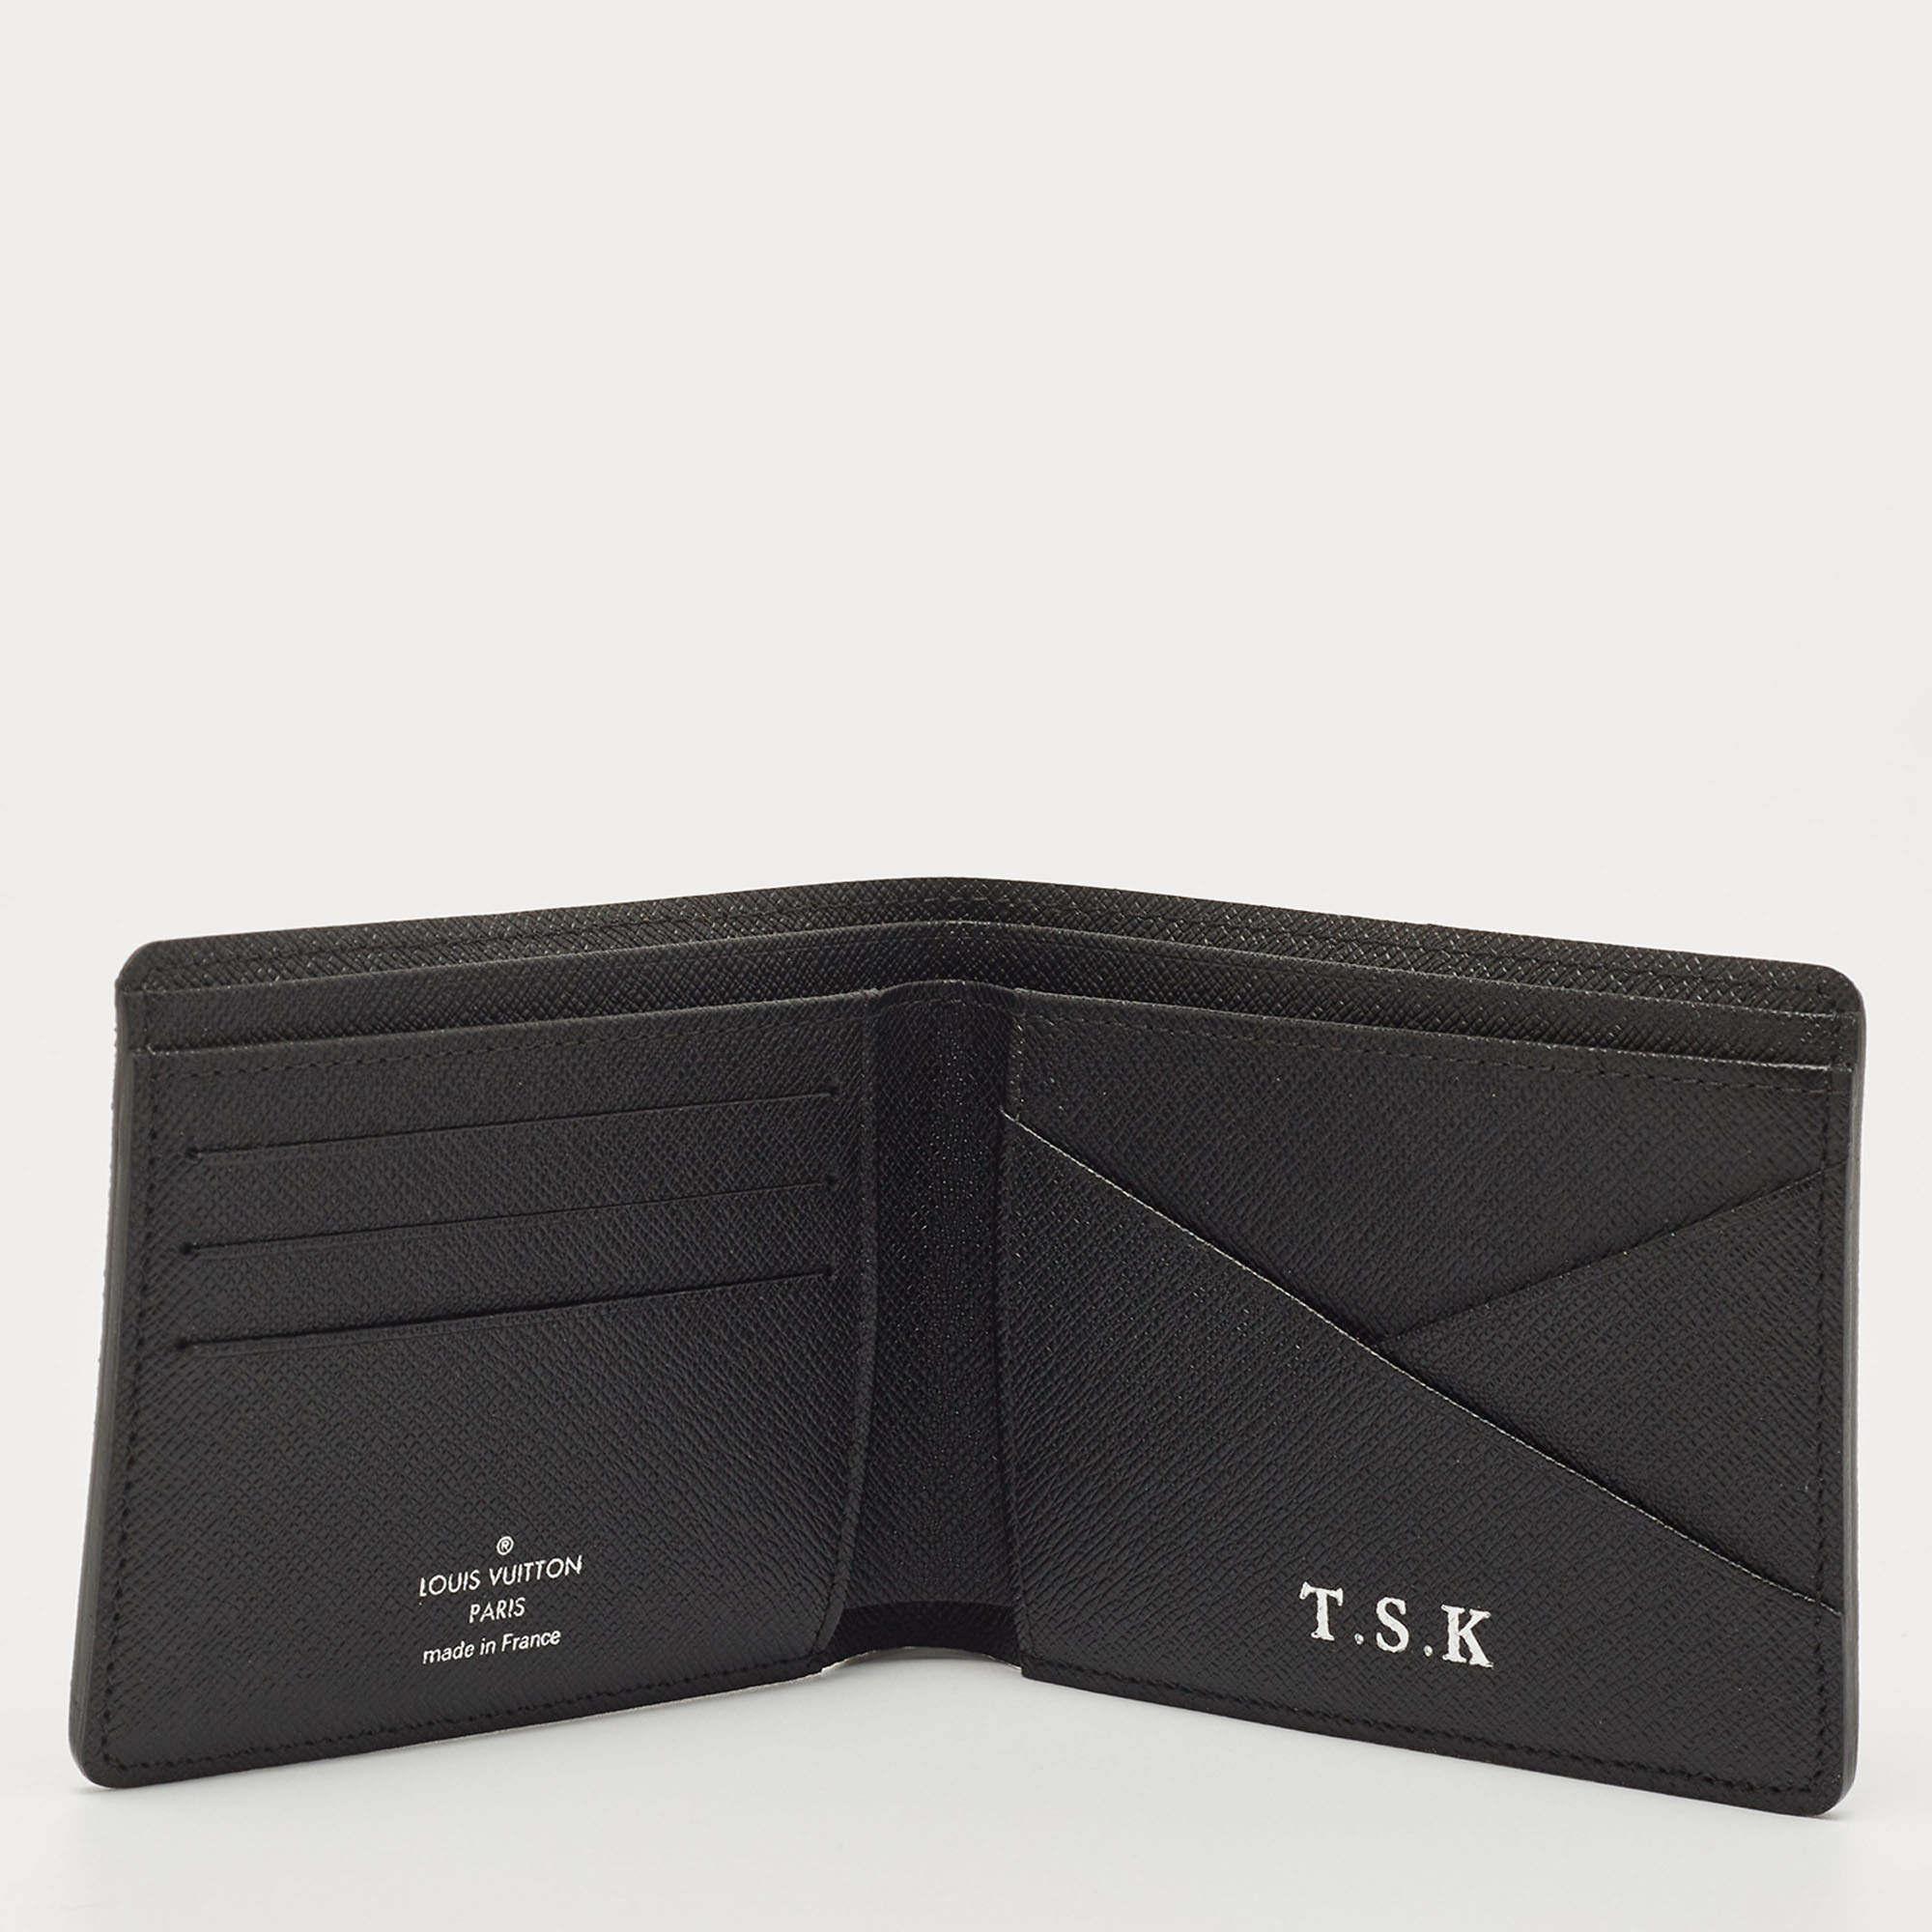 Louis Vuitton wallet + automatic card holder LV Louis Vuitton bag